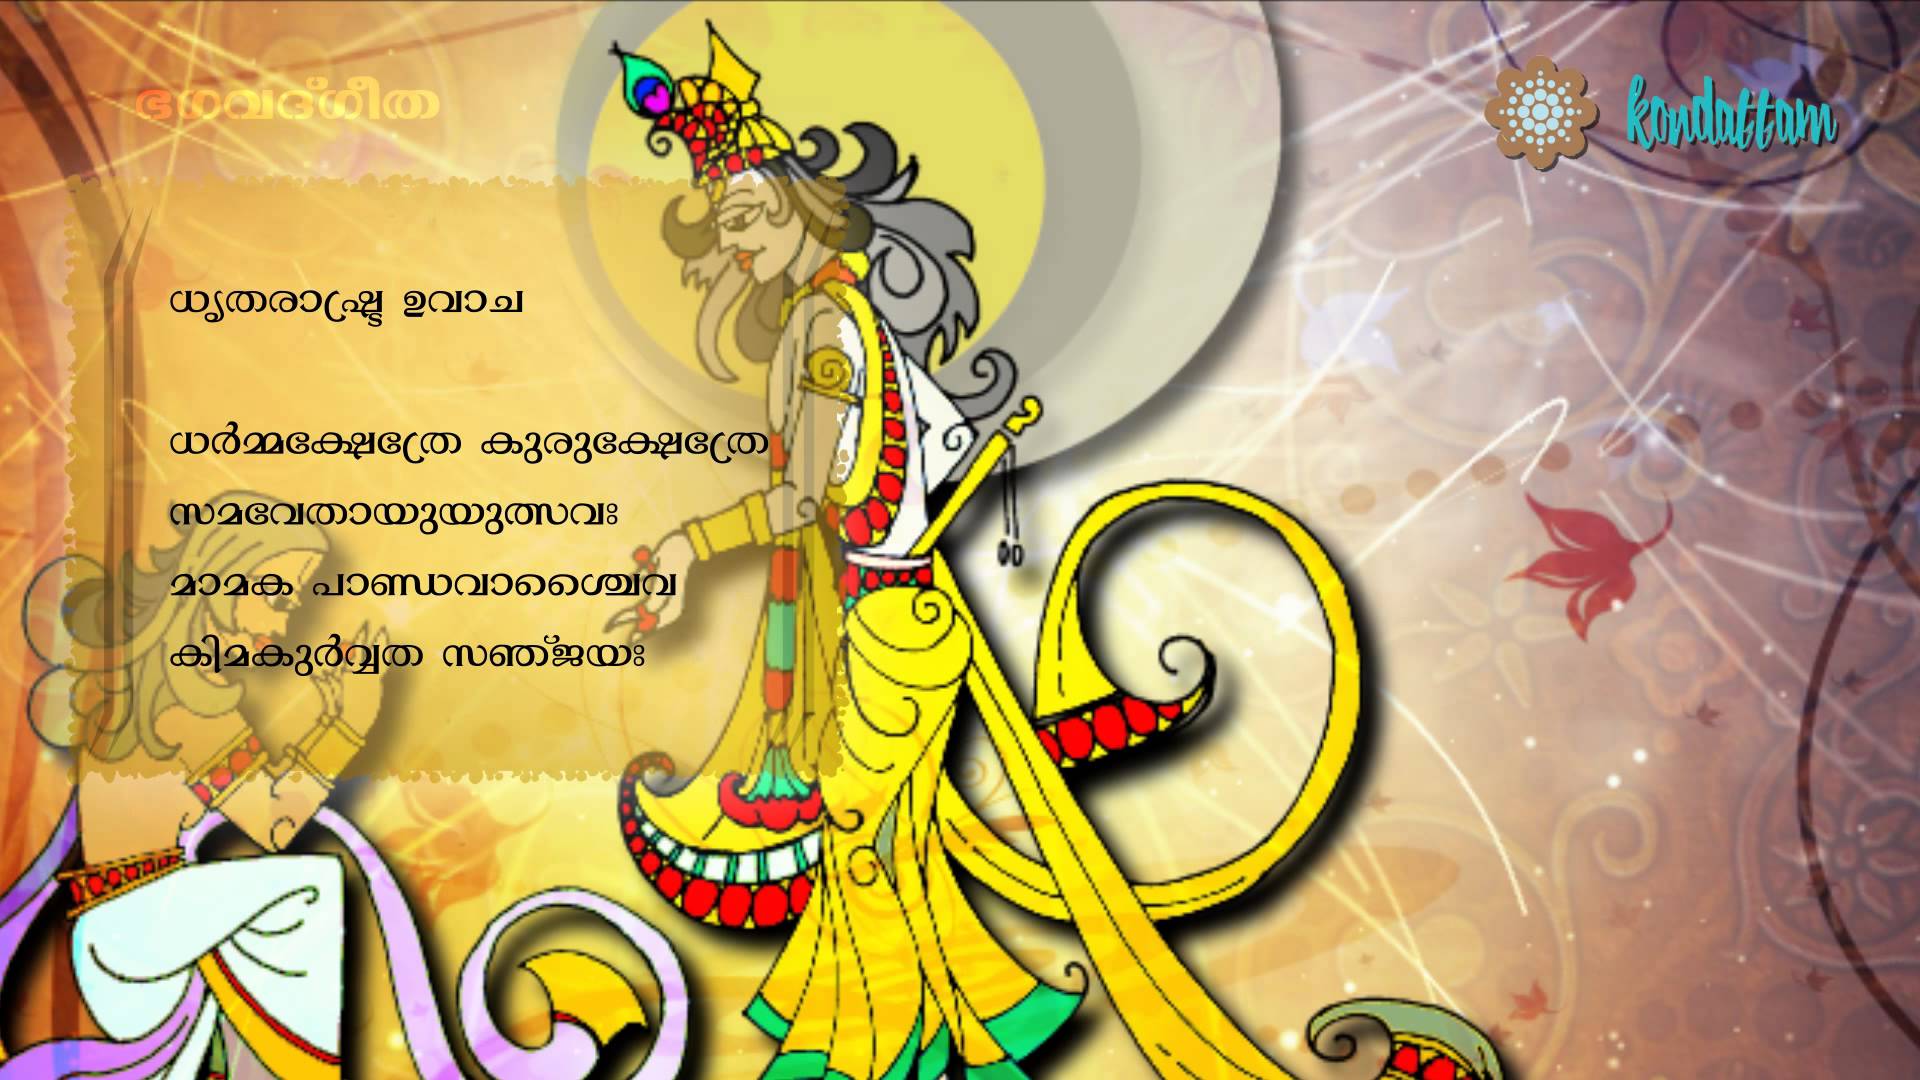 Bhagavad Gita Malayalam - Dharmakshetre Kurukshetre - YouTube